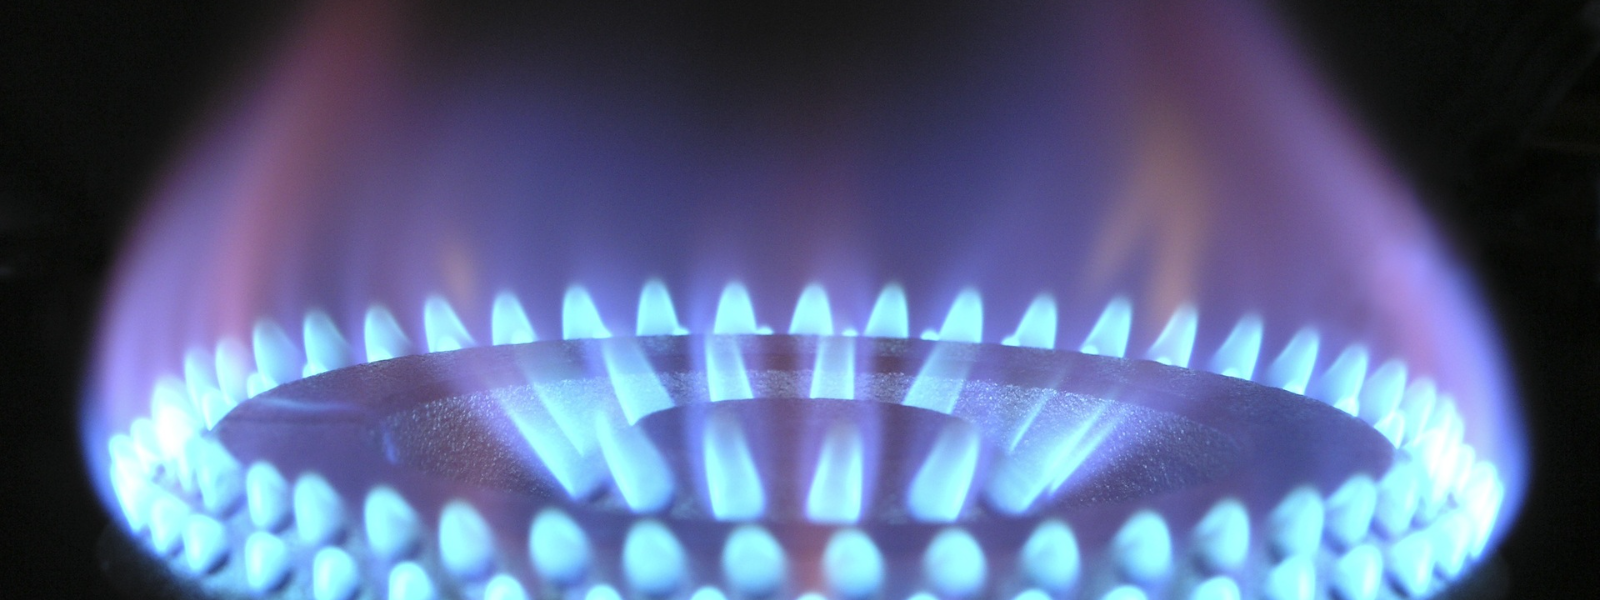 OLANGA OÜ - Meie ettevõte on spetsialiseerunud gaasikatelde paigaldamisele ning oleme pühendunud sellele, et meie klien...